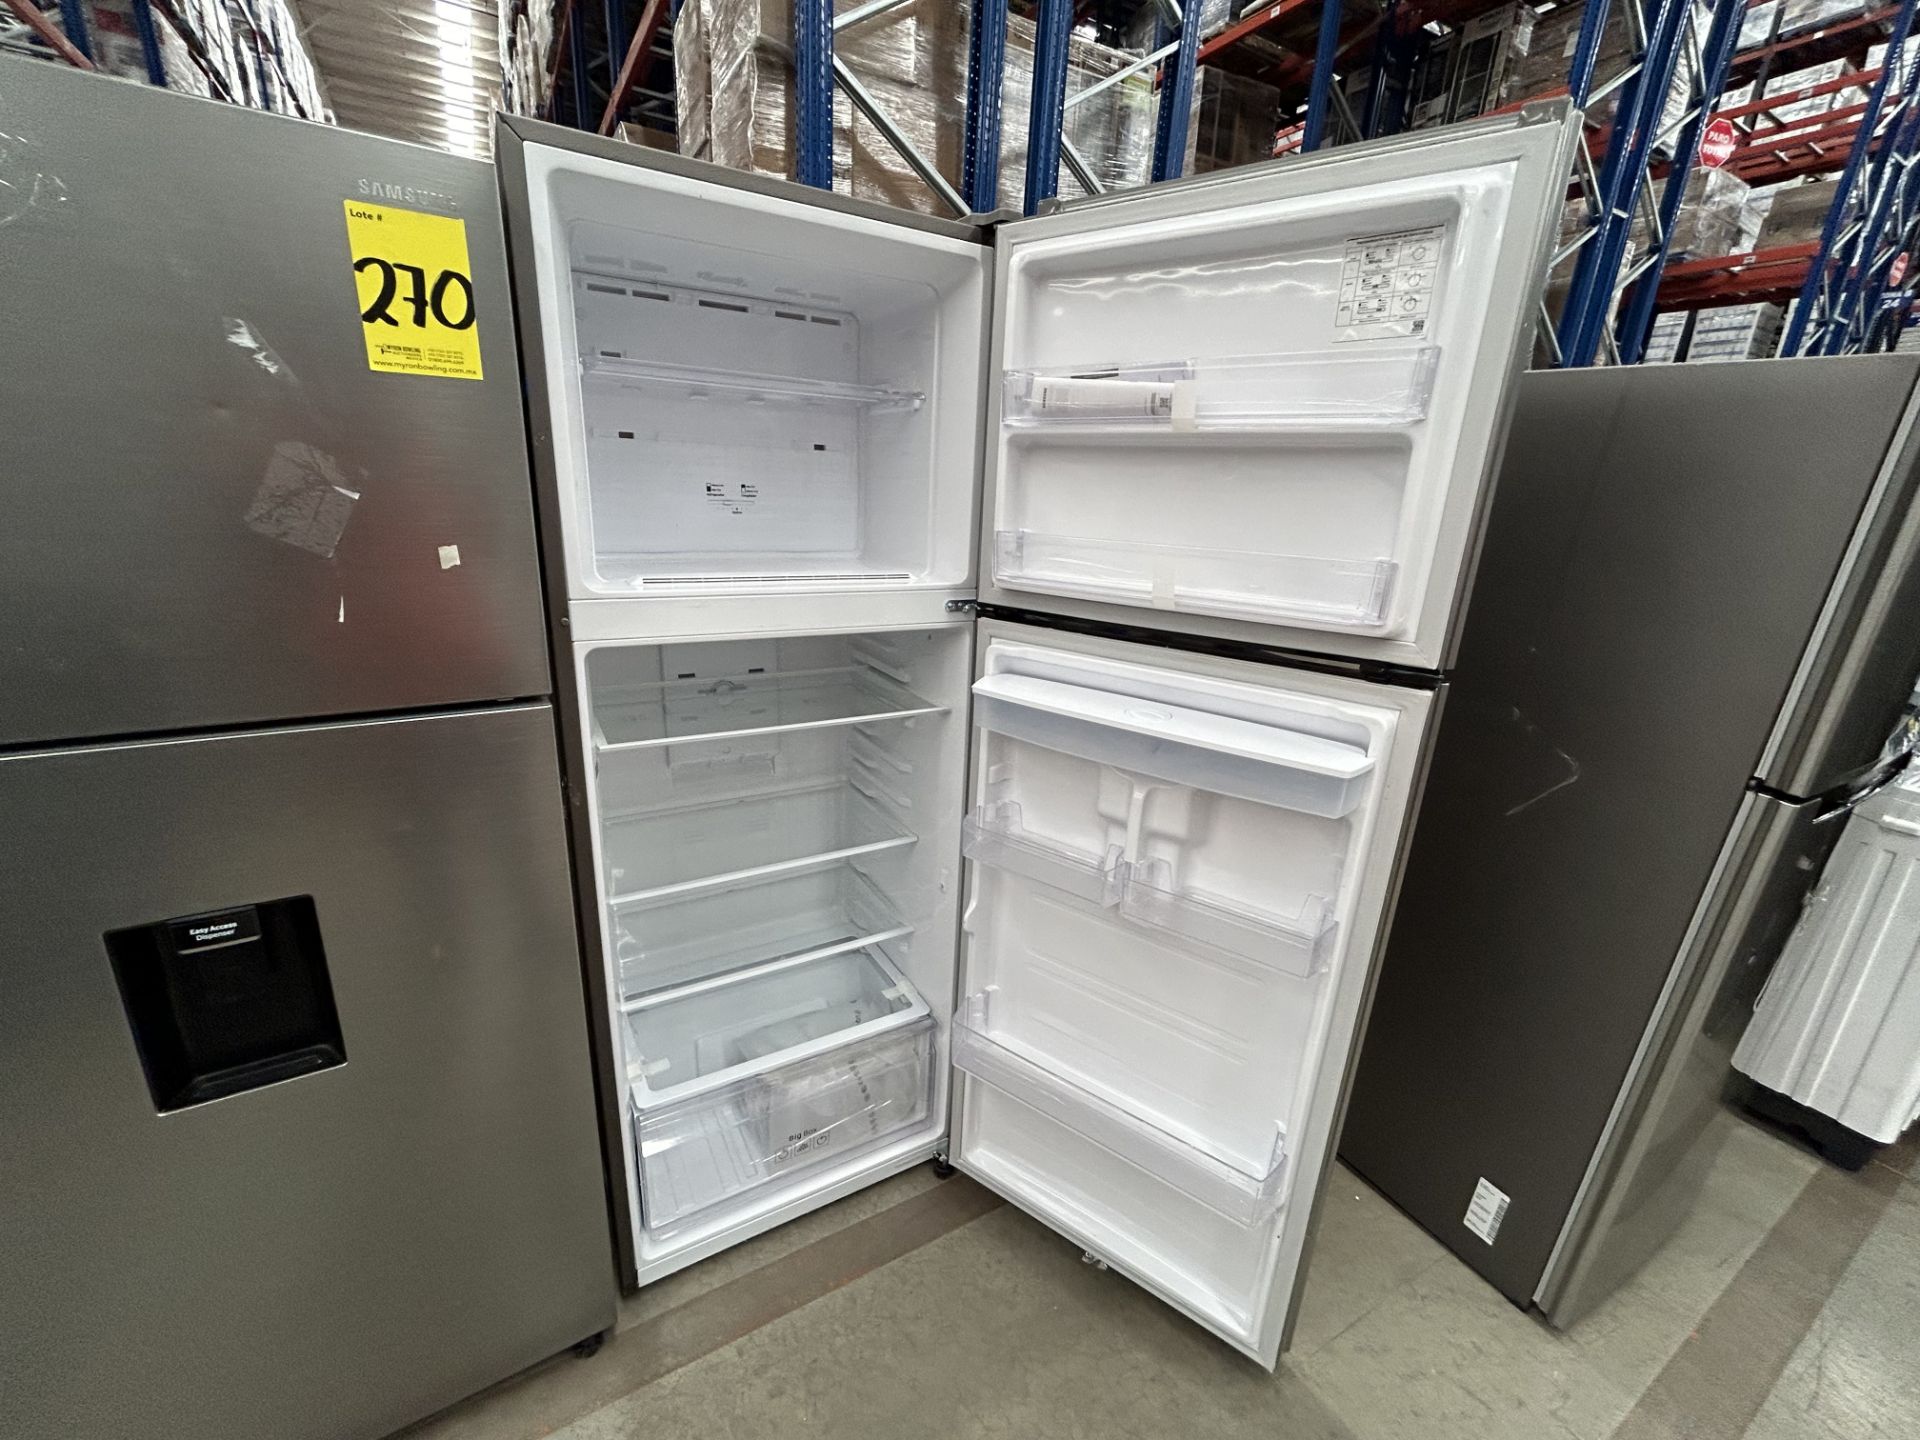 Lote de 2 refrigeradores contiene: 1 Refrigerador con dispensador de agua Marca SAMSUNG, Modelo RT4 - Image 4 of 7